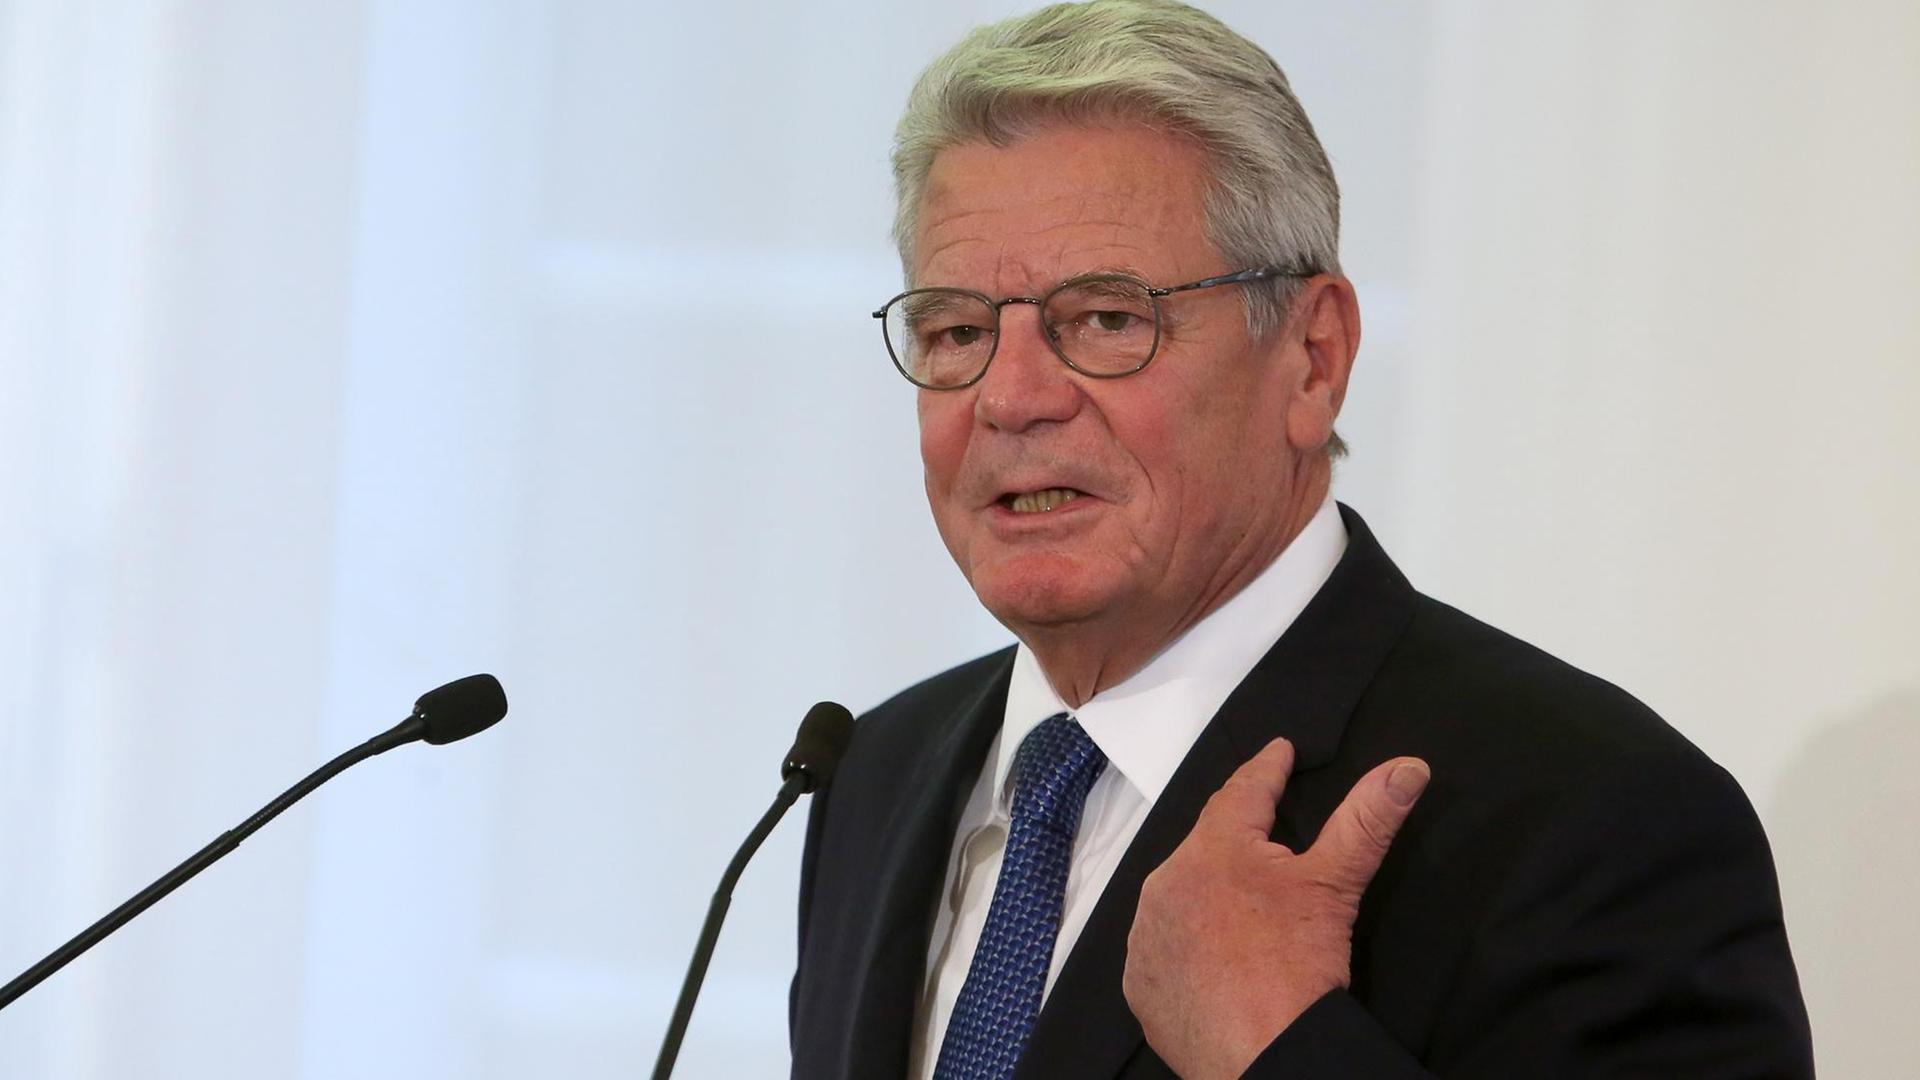 Bundespräsident Joachim Gauck spricht am 27.09.2015 in der Staatskanzlei in Mainz (Rheinland-Pfalz).